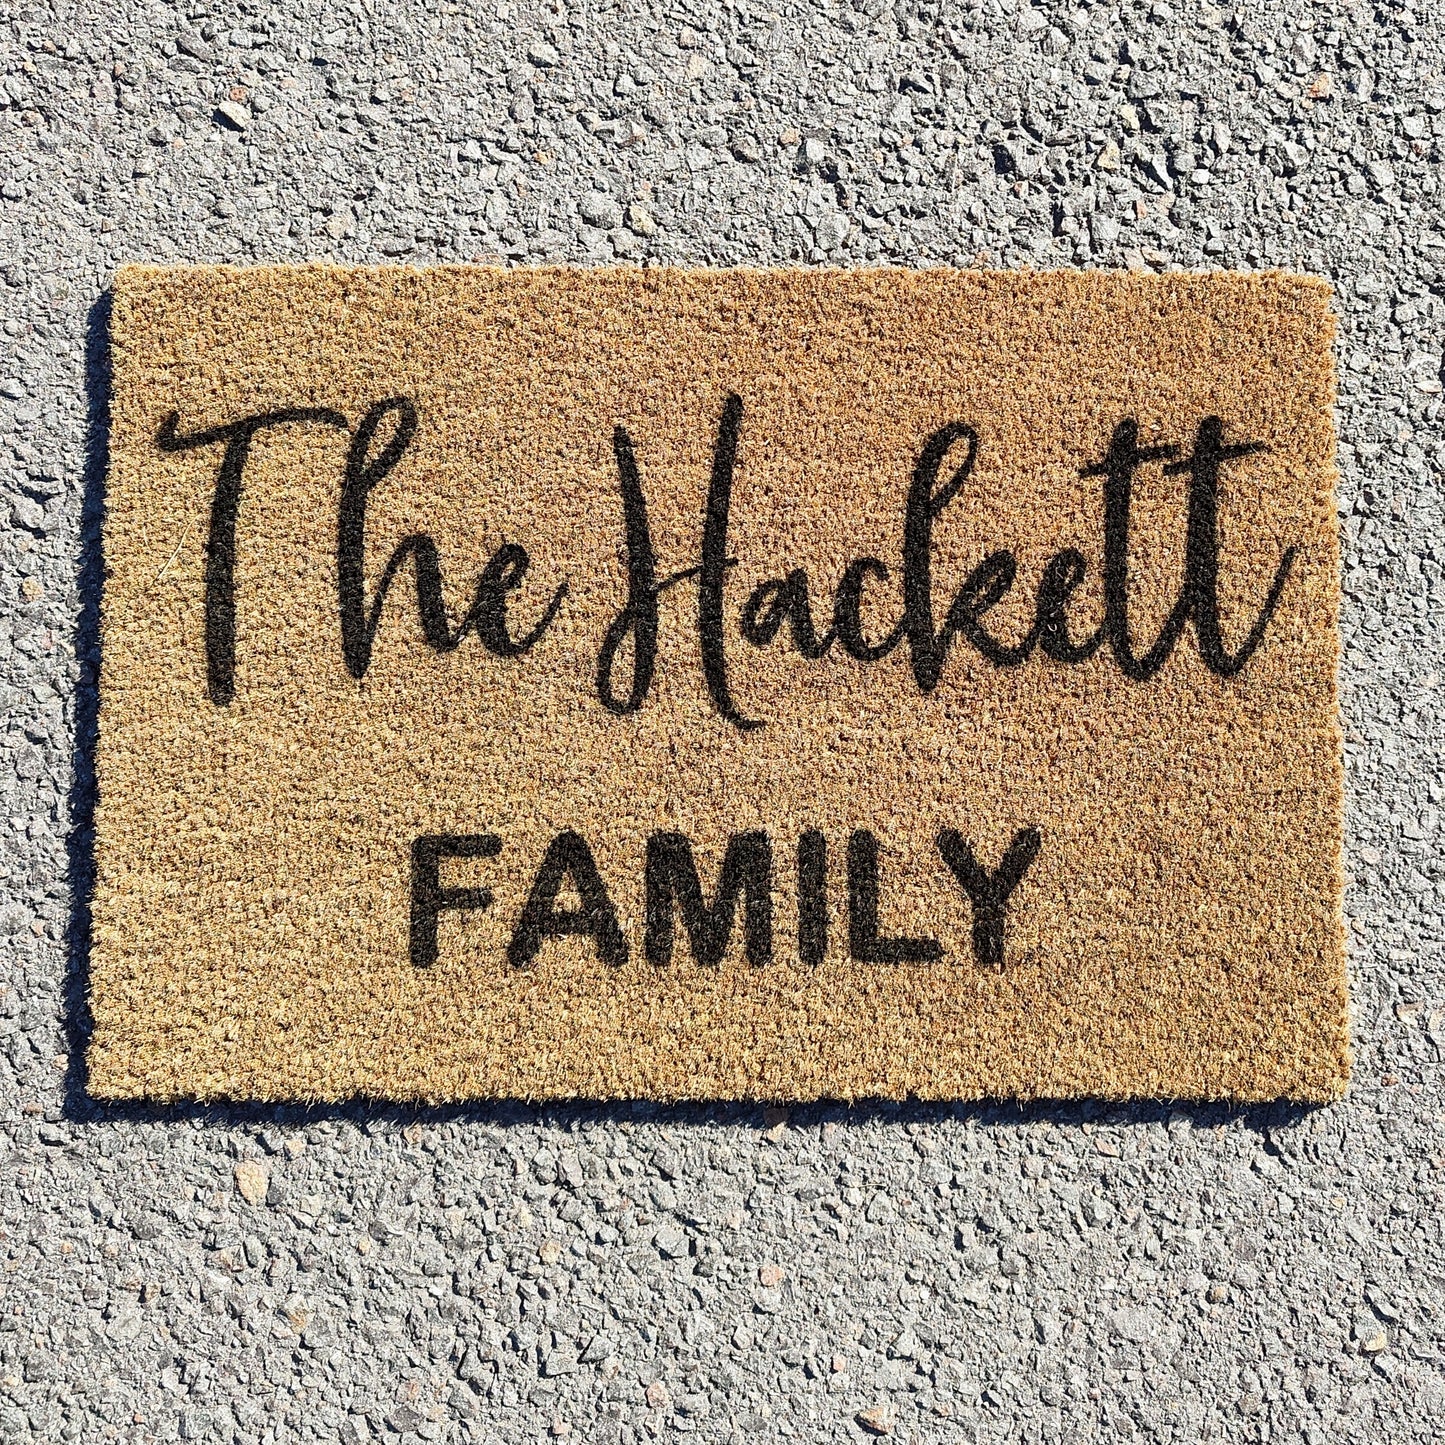 Family name front doormat in script font | Personalised Doormat - Personalised Doormat Australia